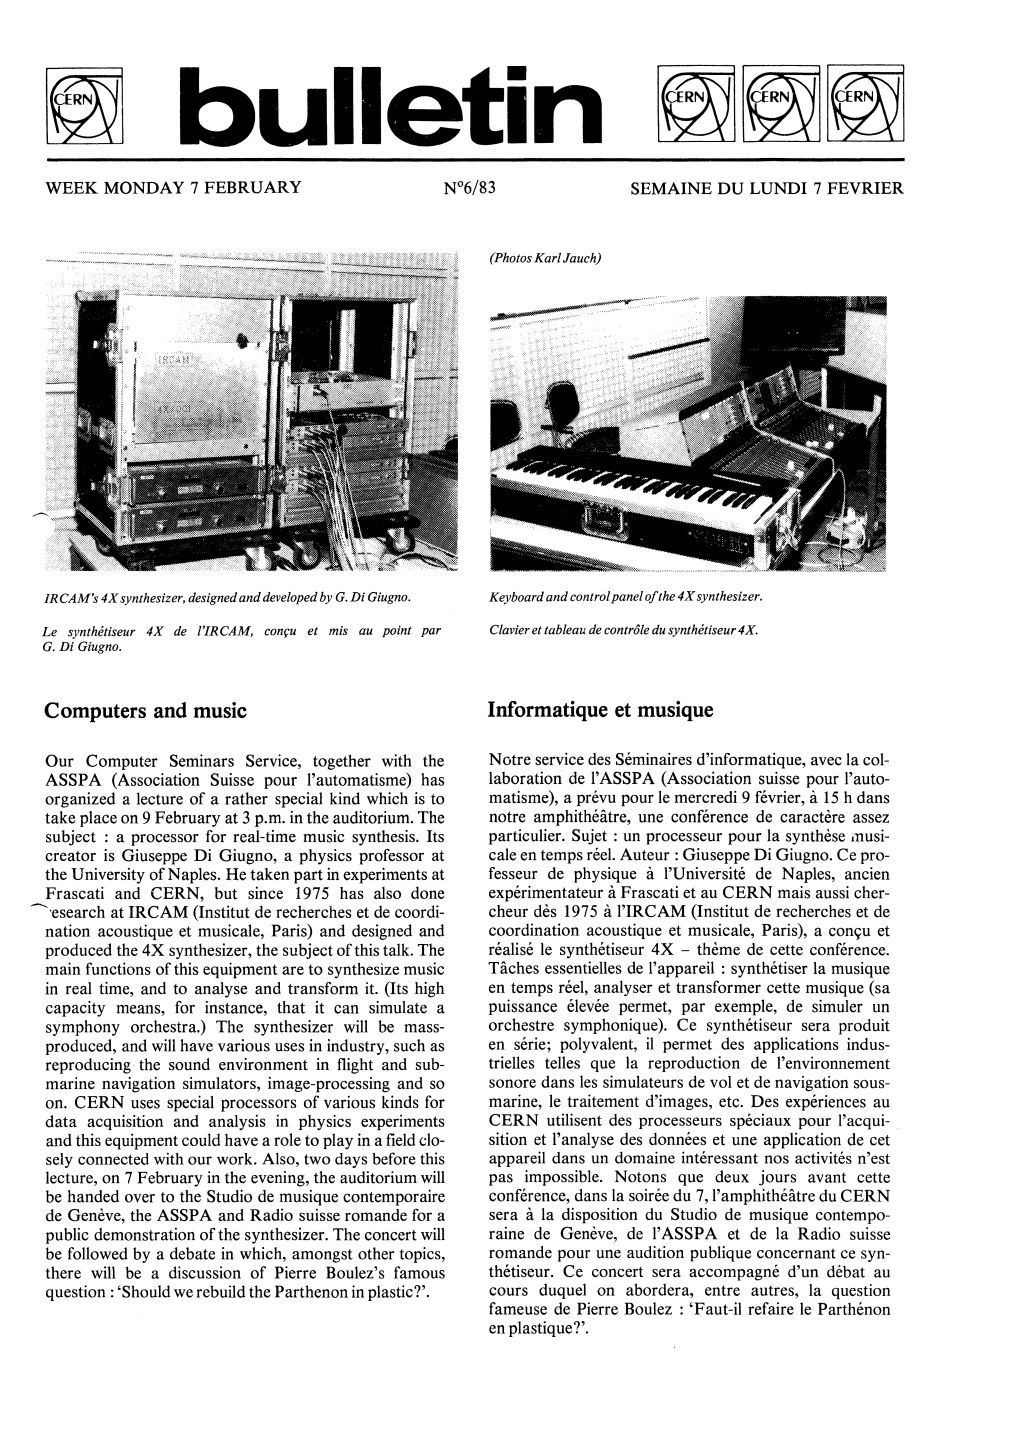 Computers and Music Informatique Et Musique